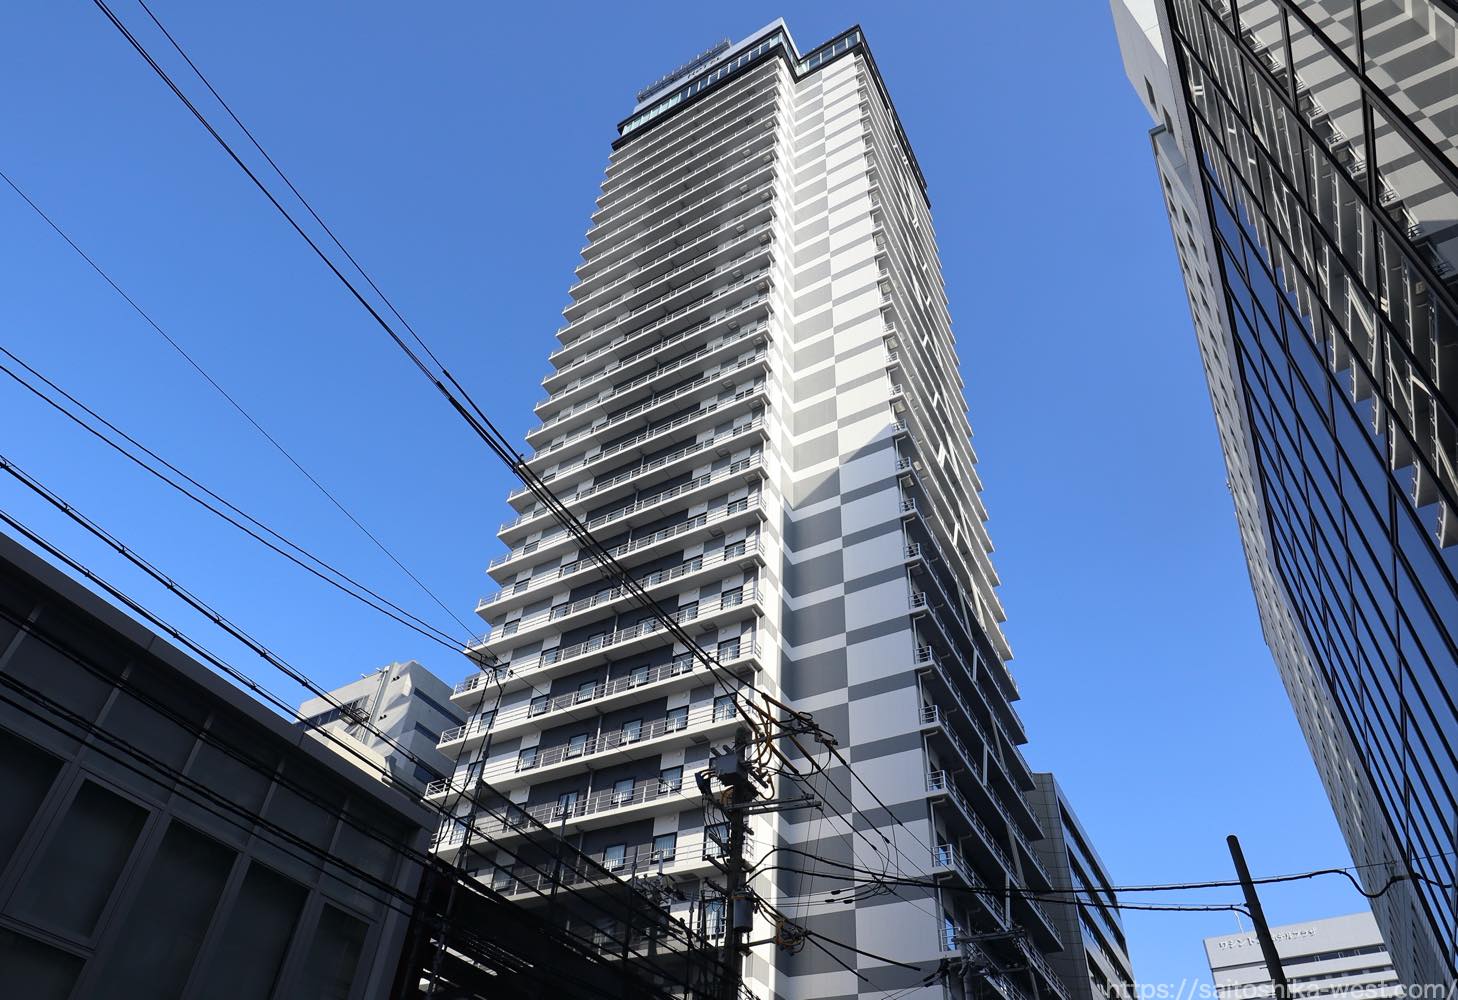 アパグループが ホテルwbf新大阪スカイタワー を取得 アパホテル 新大阪駅タワー として 21年3月30日オープン Re Urbanization 再都市化